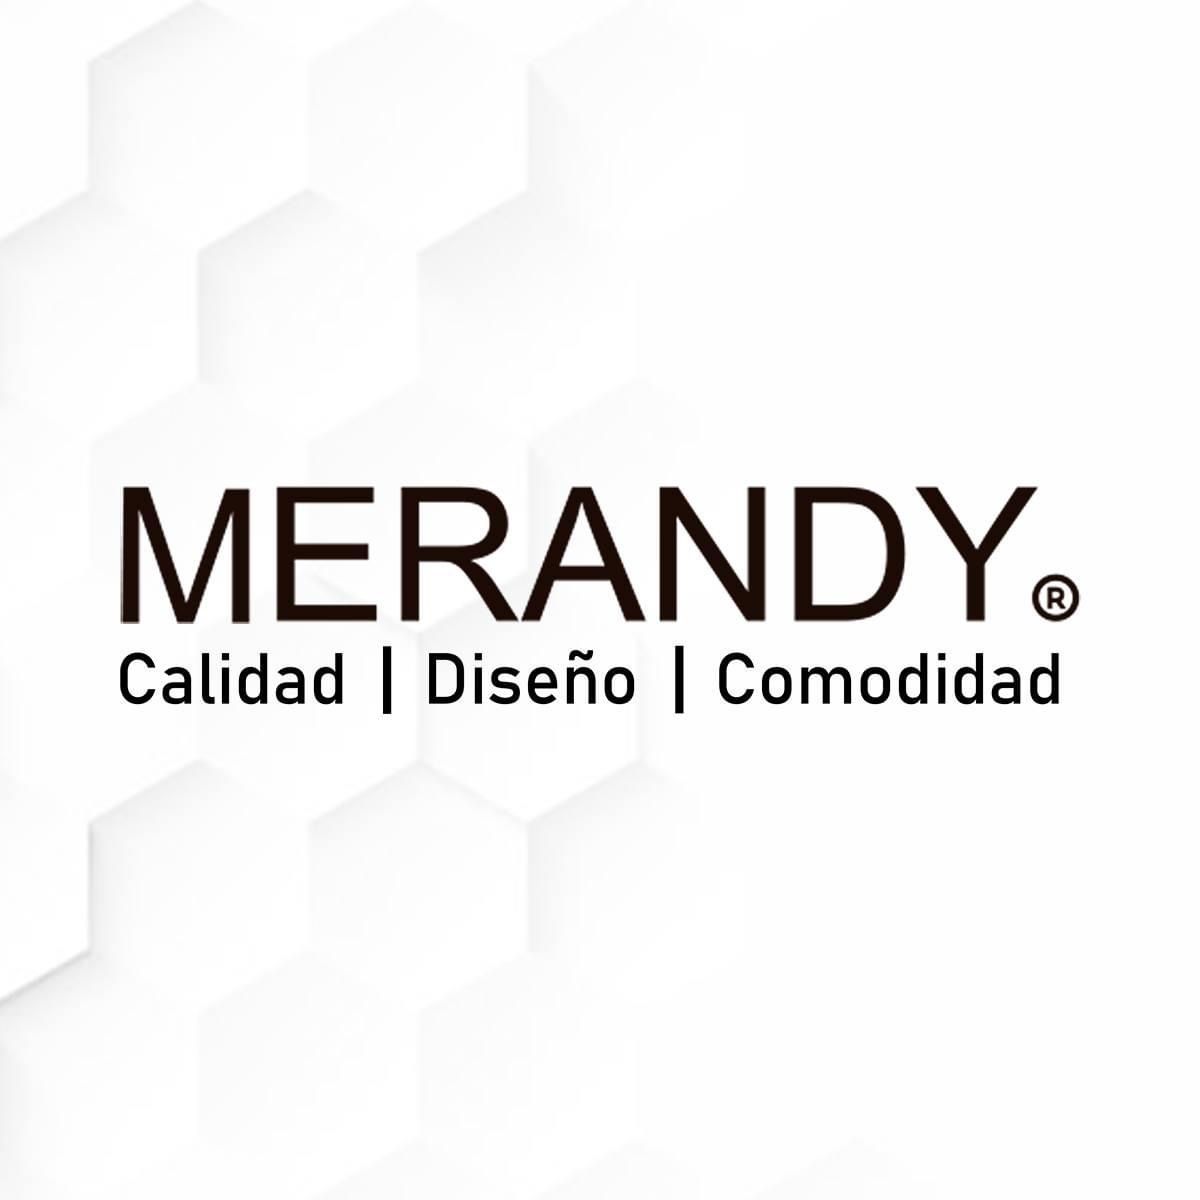 Merandy